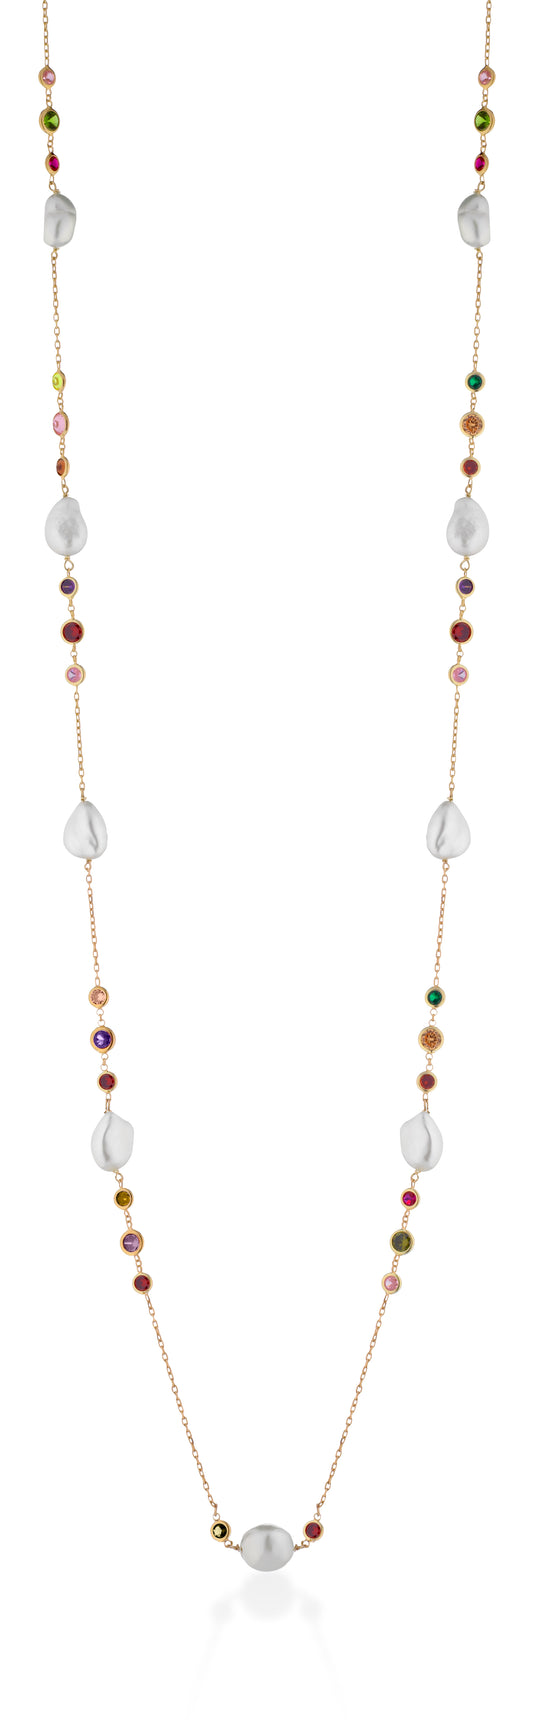 LELUNE - Collana Argento Lunga con Perle Barocche e Zirconi Multicolor